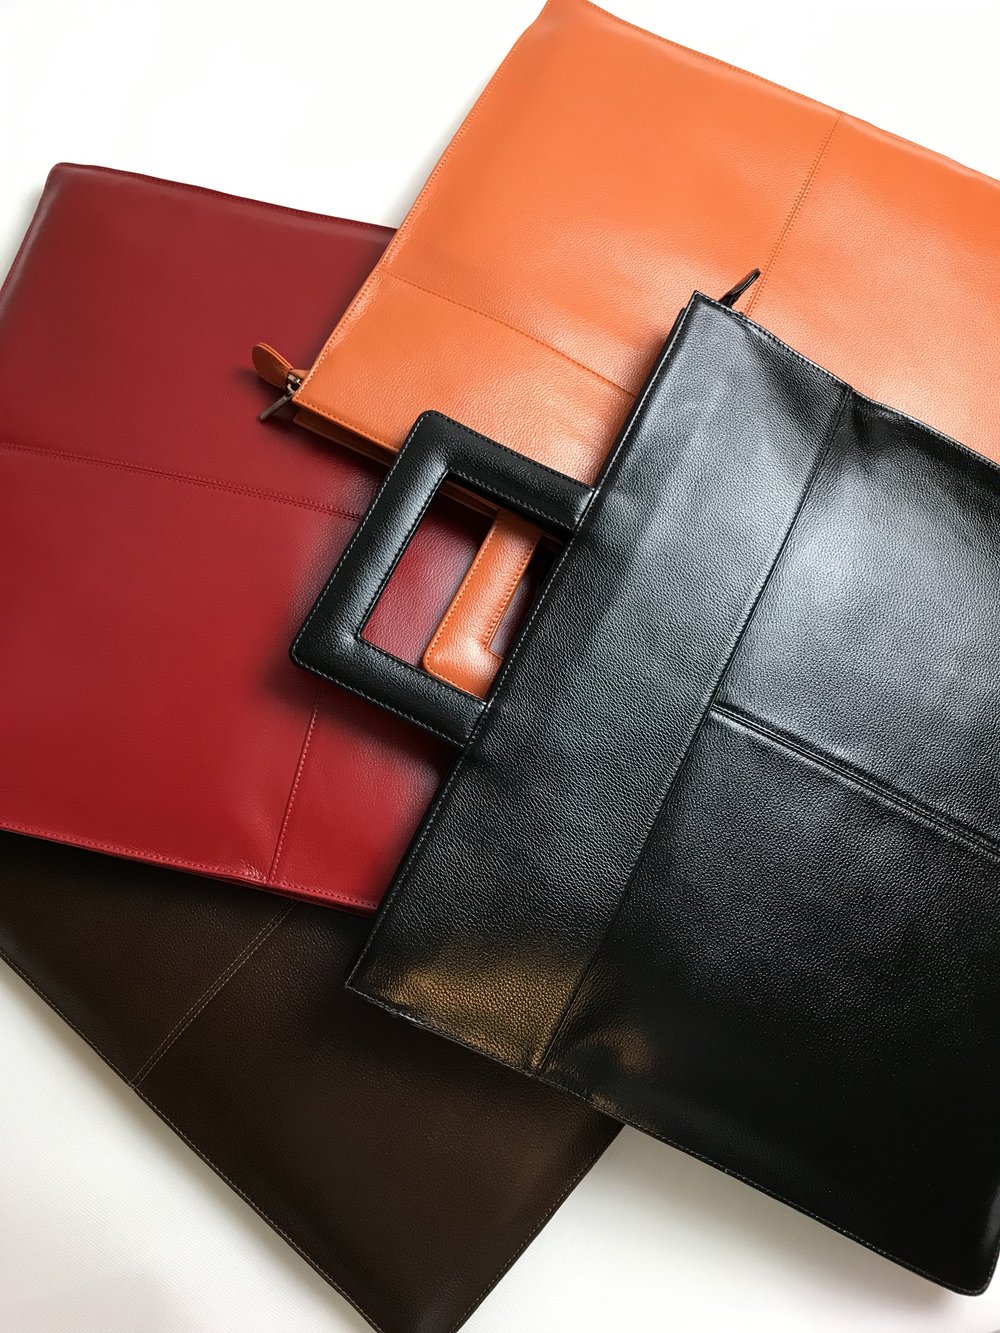 Oversized Foldover Leather Clutch Bag (Jennifer) — P. Sherrod & Co